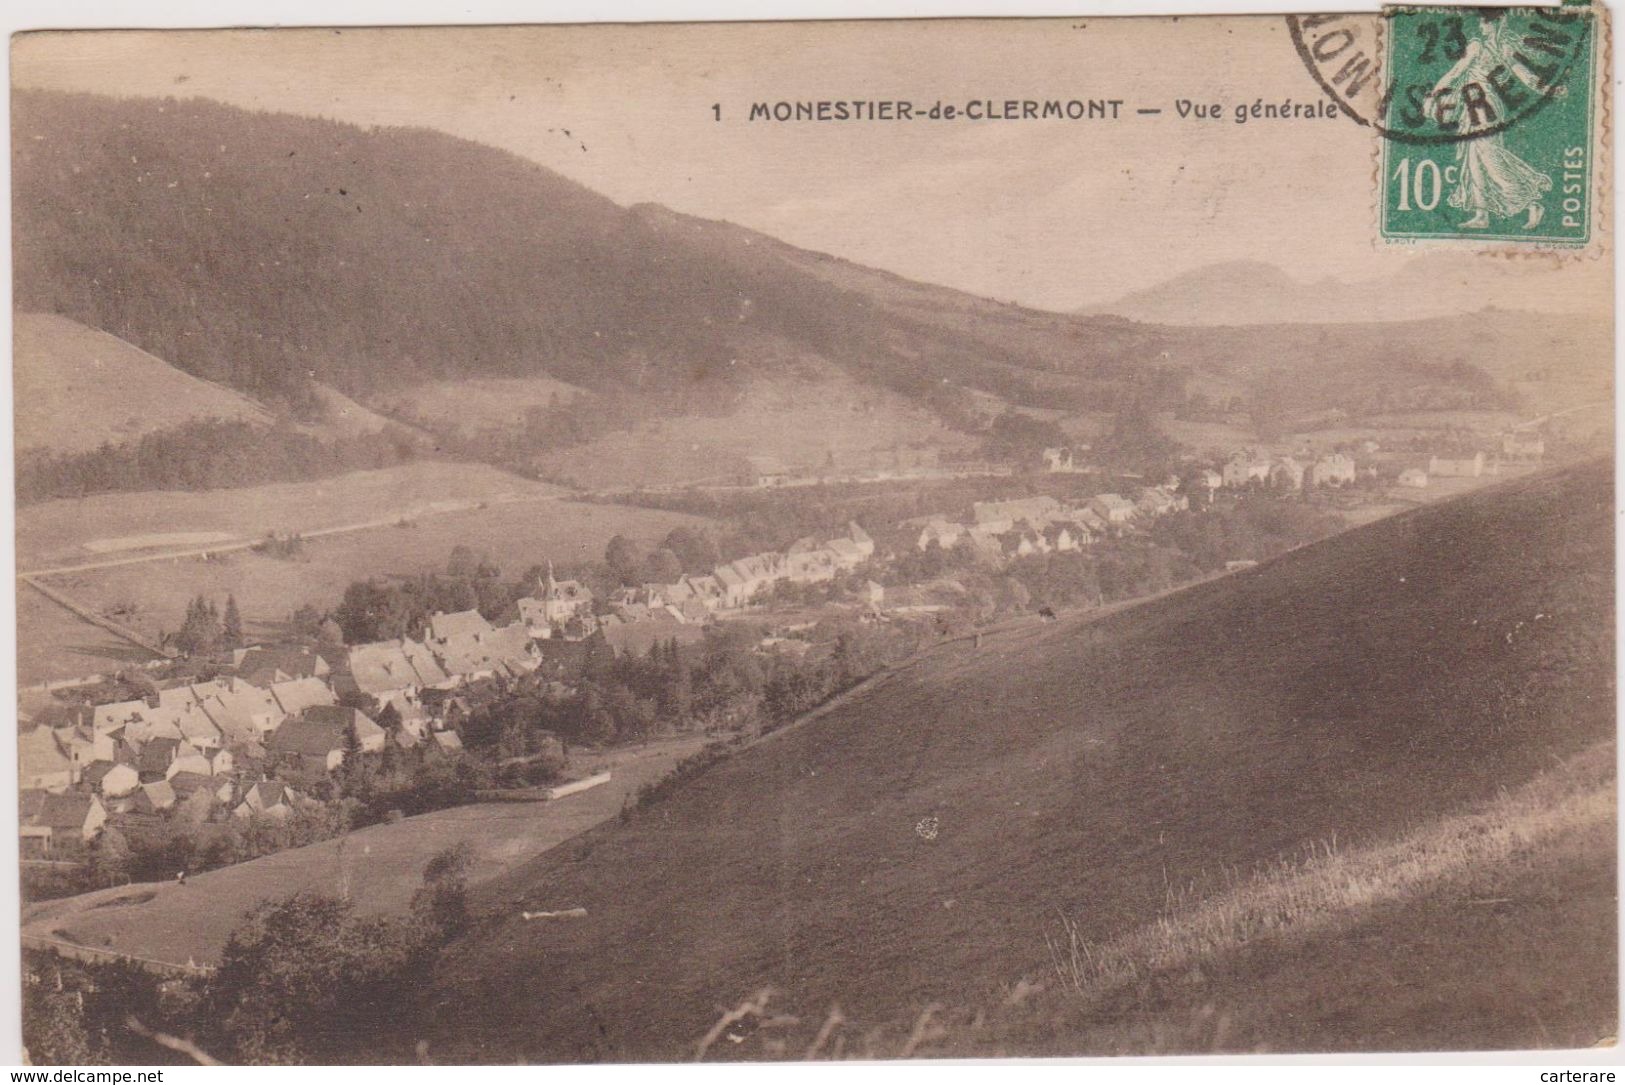 Isère,le Village De Monestier De Clermont En 1923,porte Du Triève,col Du Fau,prés De Grenoble,vif,rare - Vif